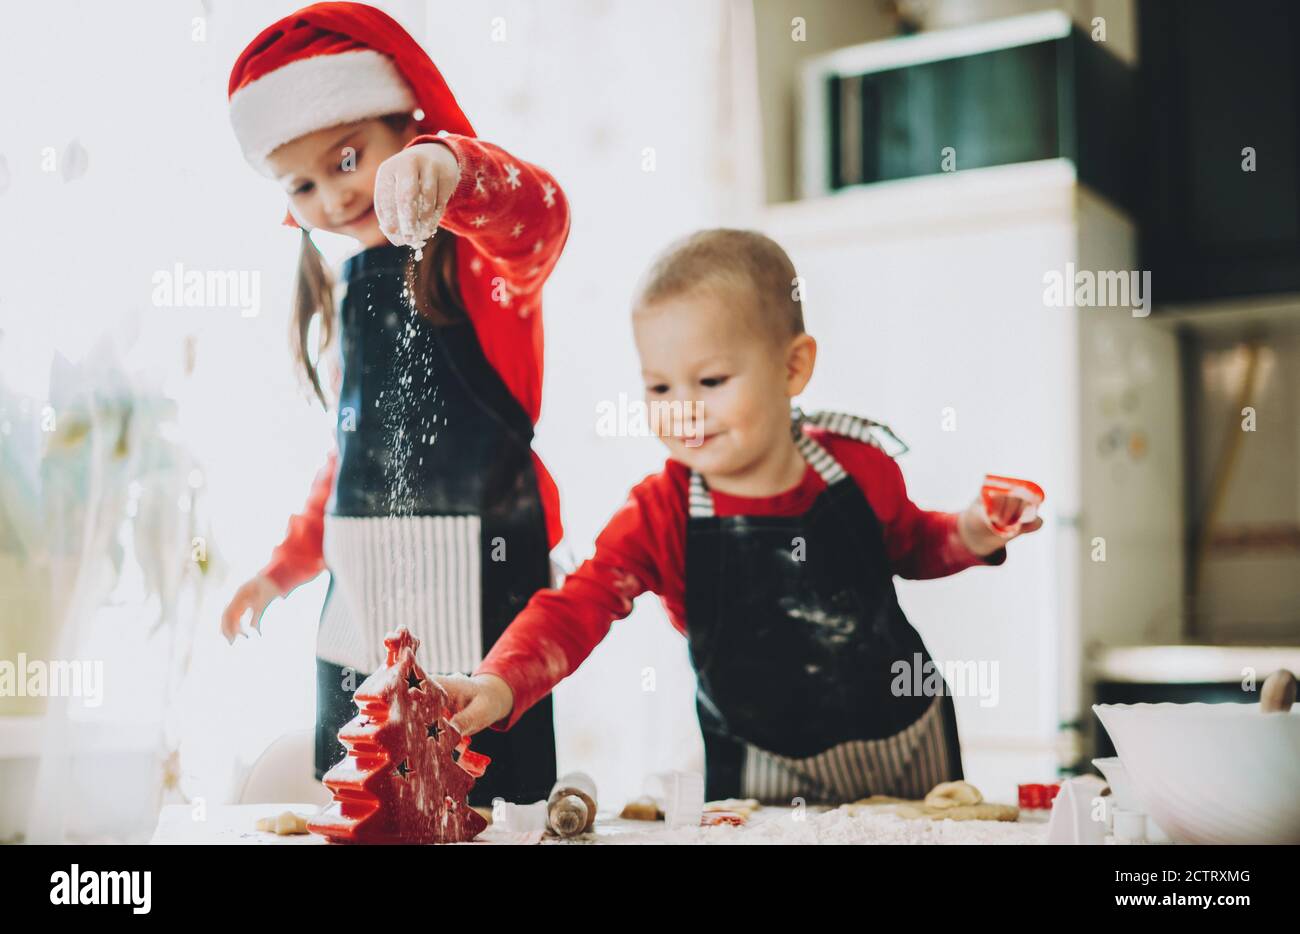 Weihnachten Vorbereitung von zwei Geschwistern machen Cookies in rot gekleidet Kleidung mit weihnachtsmütze Stockfoto